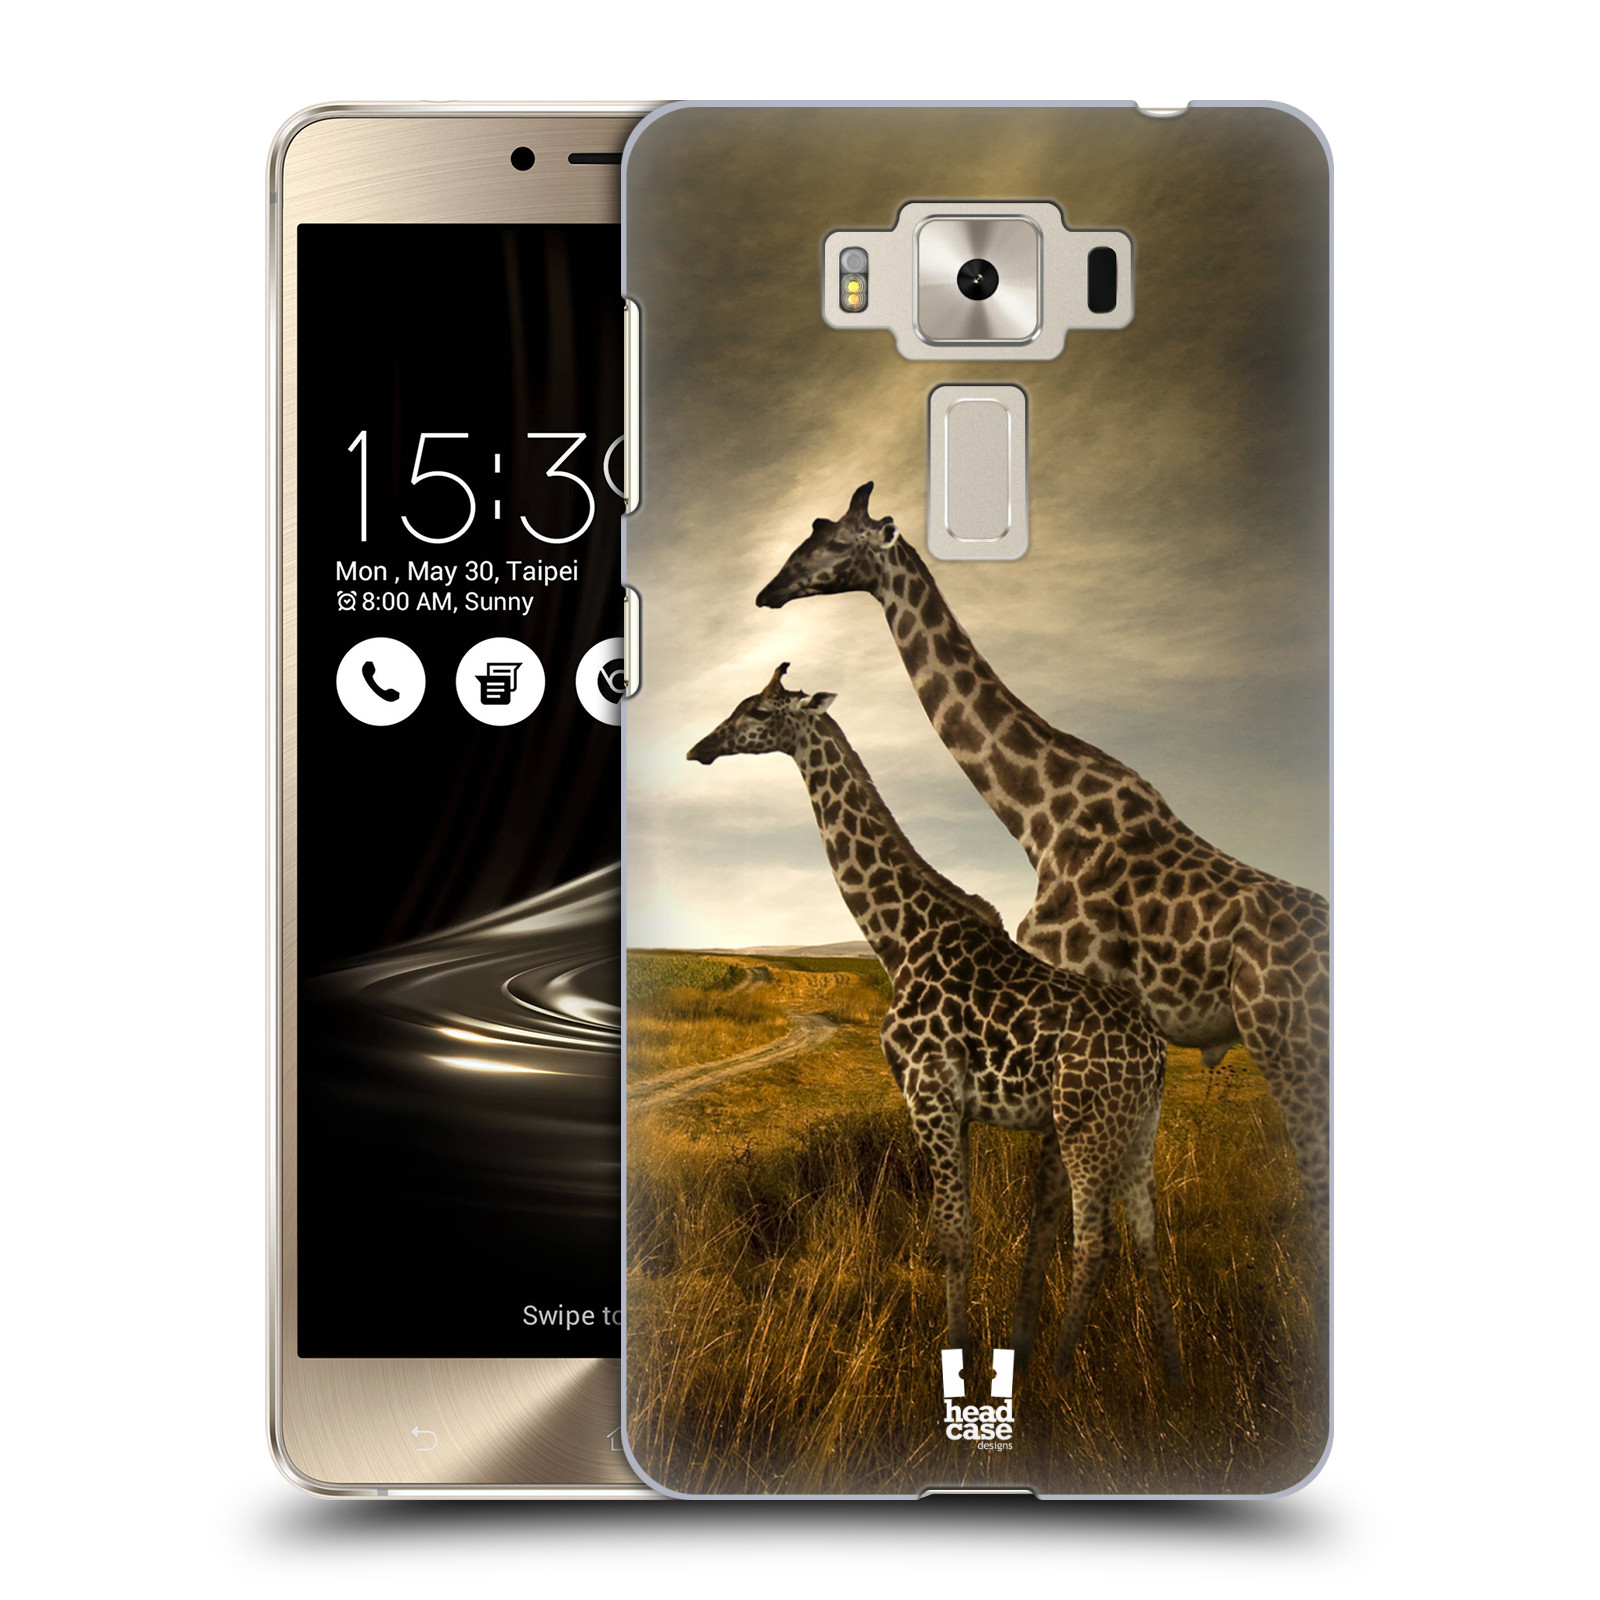 HEAD CASE plastový obal na mobil Asus Zenfone 3 DELUXE ZS550KL vzor Divočina, Divoký život a zvířata foto AFRIKA ŽIRAFY VÝHLED